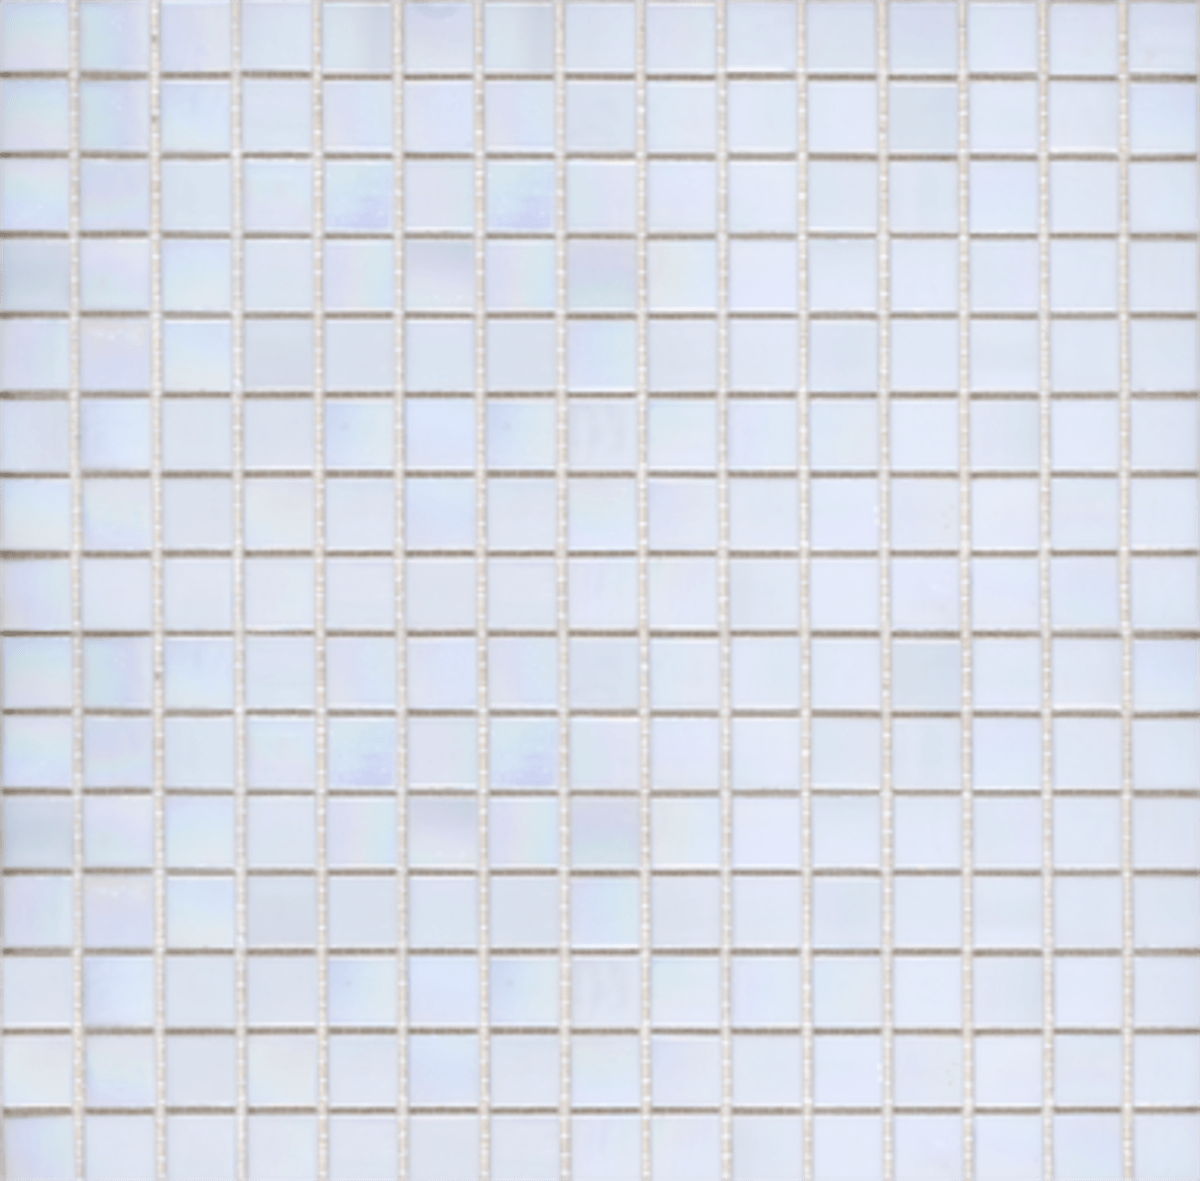 Skleněná mozaika Premium Mosaic bílá 33x33 cm lesk MOS20WHHM Premium Mosaic